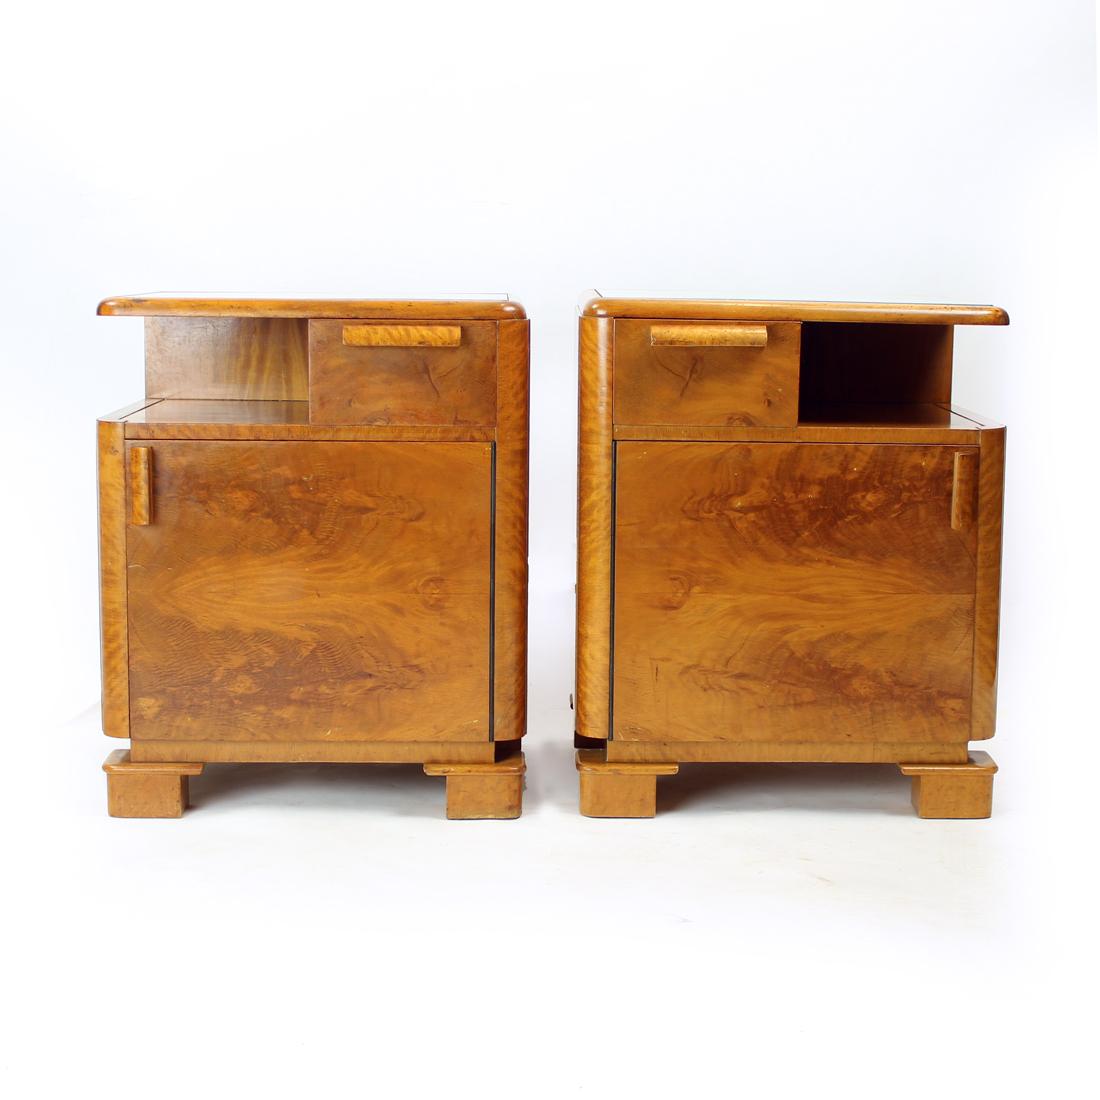 Il s'agit de tables de chevet uniques, très typiques de l'époque Art déco. Produit dans les années 1930 en Tchécoslovaquie. Les tables sont fabriquées en bois de chêne avec un placage de noyer sur l'ensemble des tables. Plein de détails et de style.